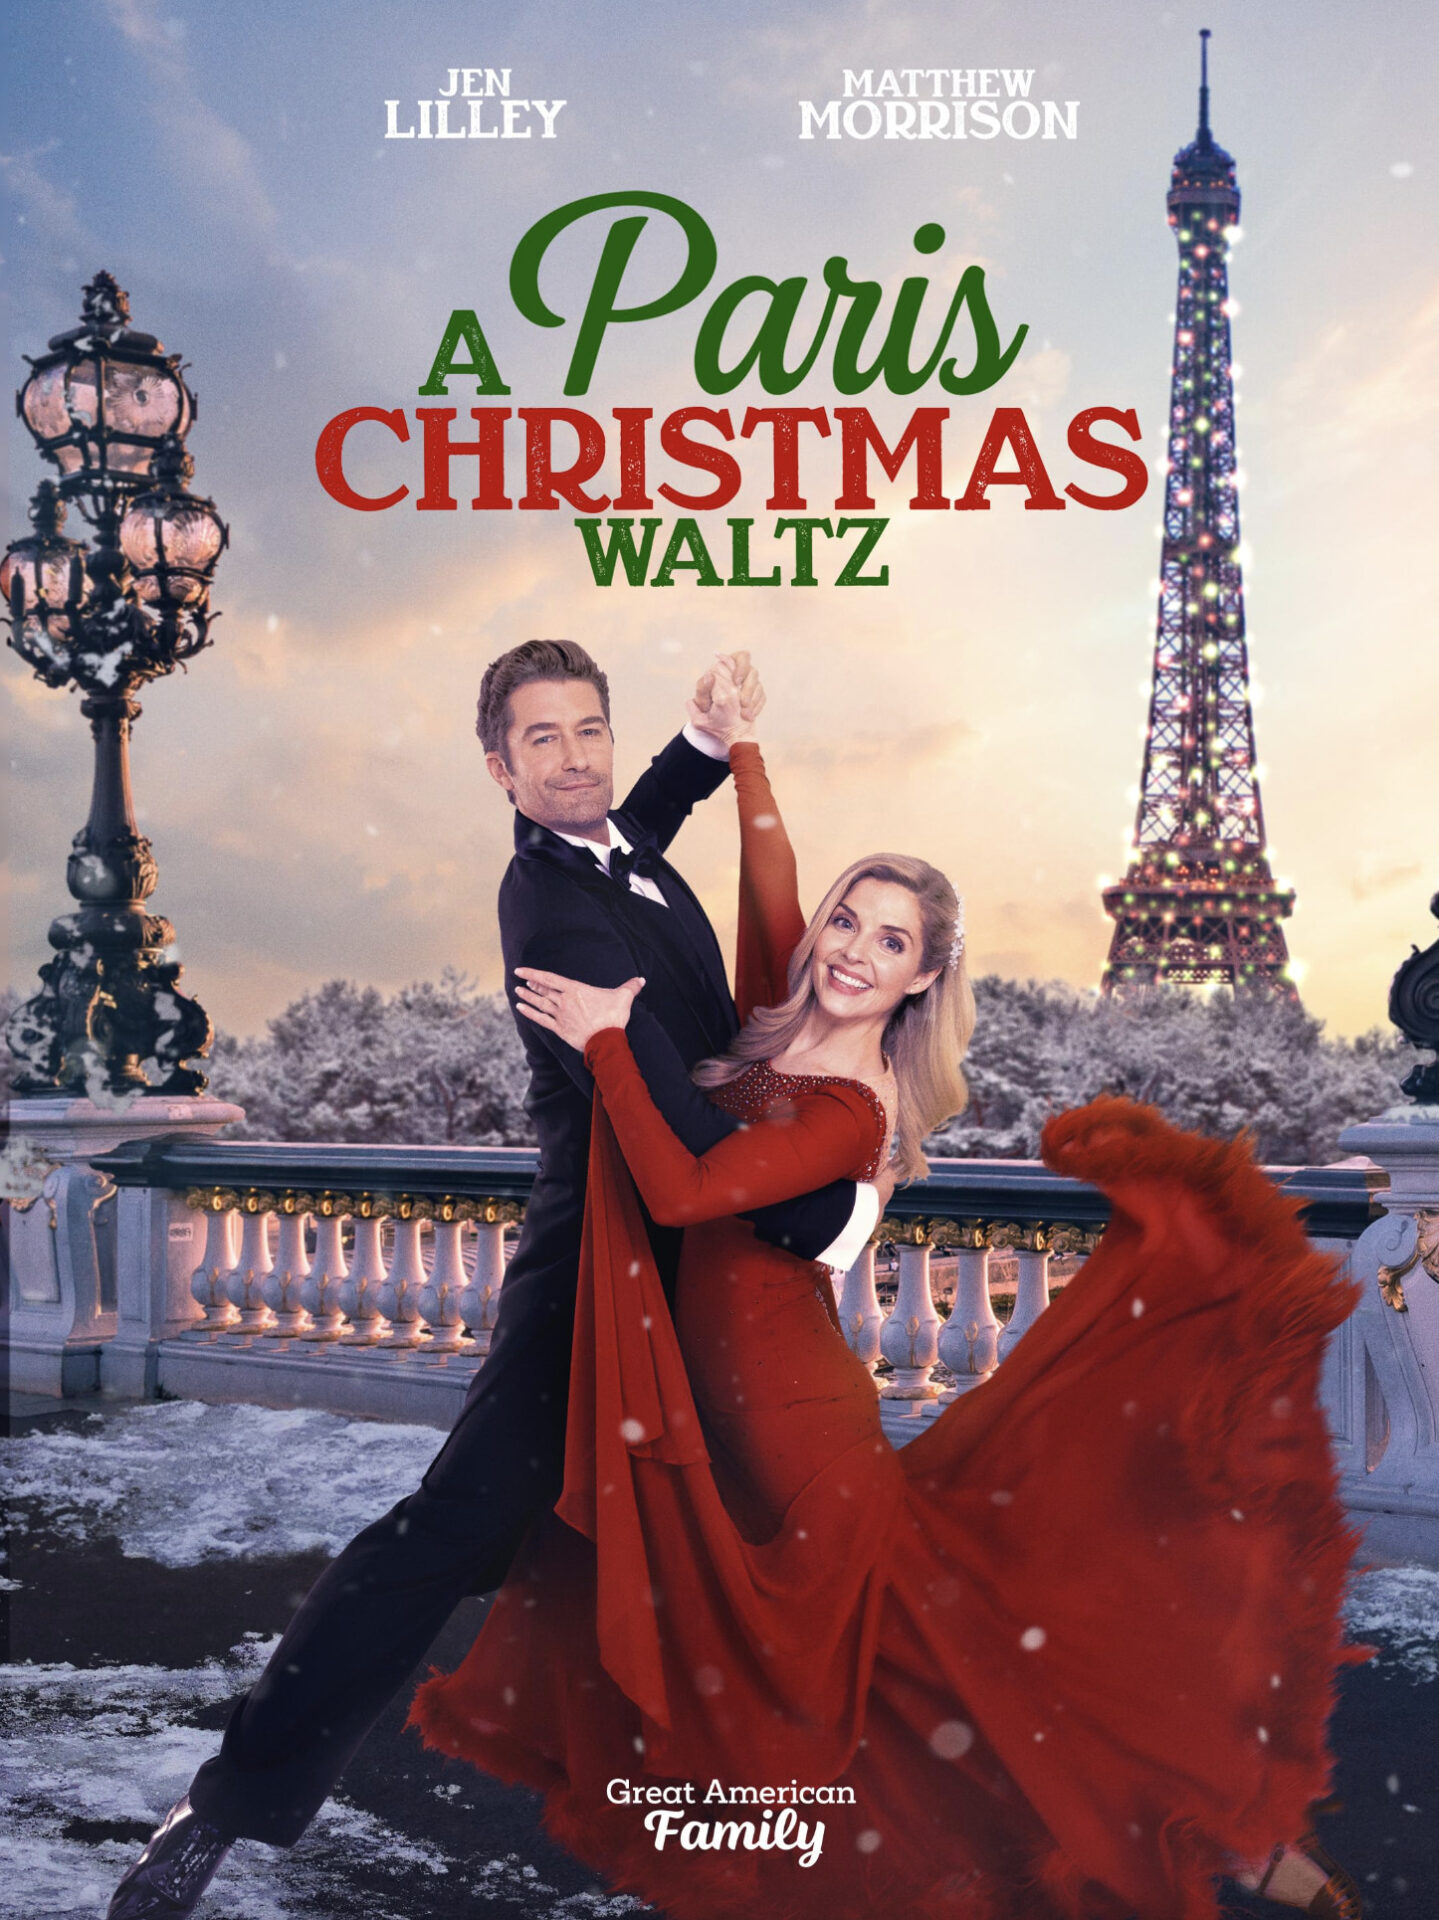 A PARIS CHRISTMAS WALTZ Movieguide Movie Reviews for Families